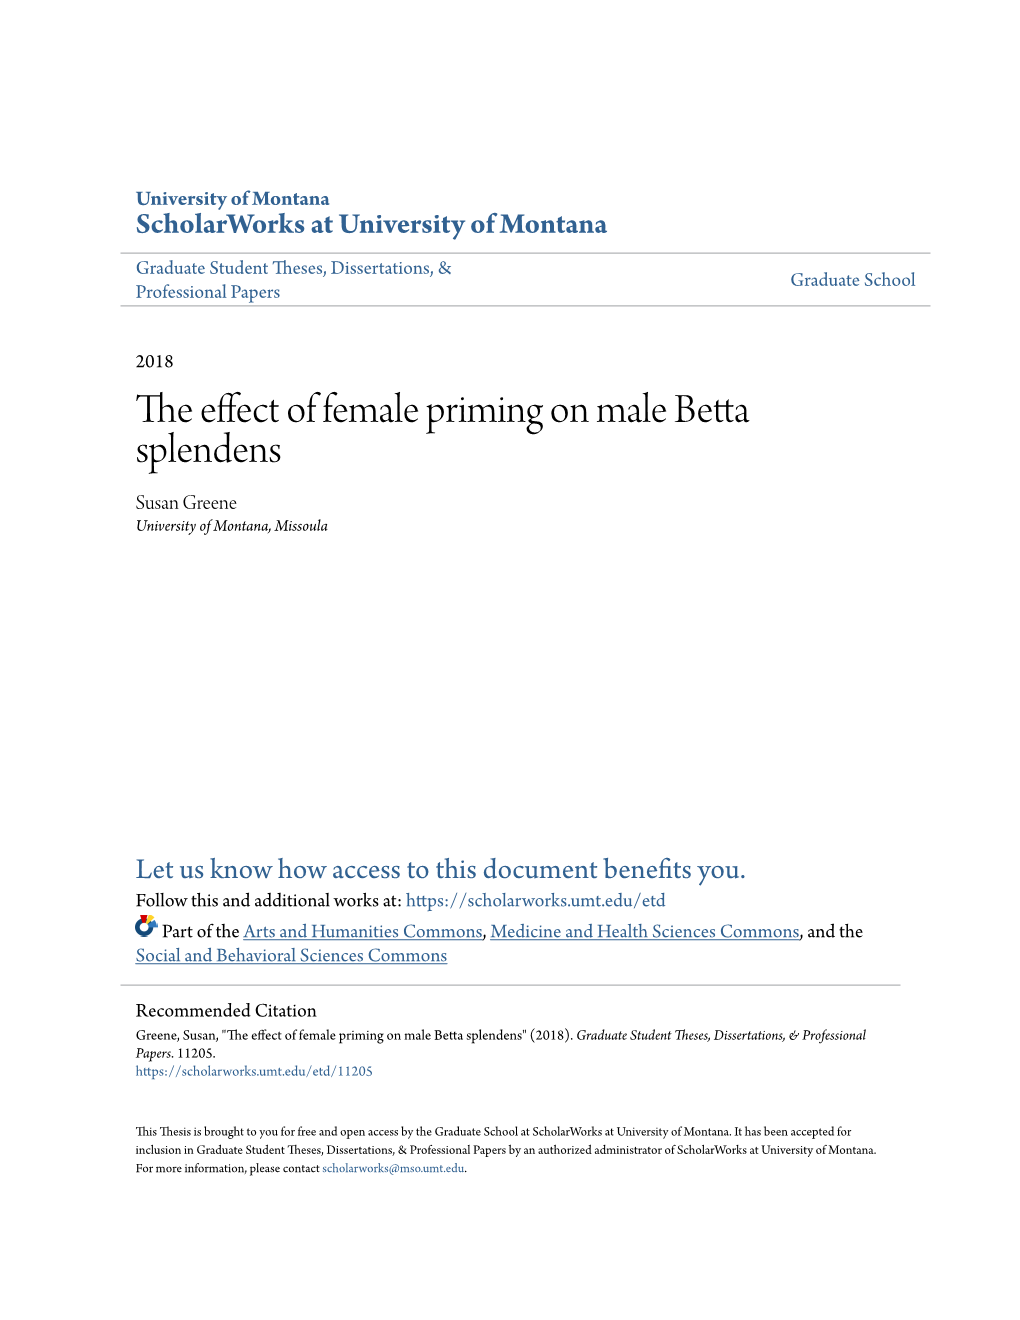 The Effect of Female Priming on Male Betta Splendens Susan Greene University of Montana, Missoula